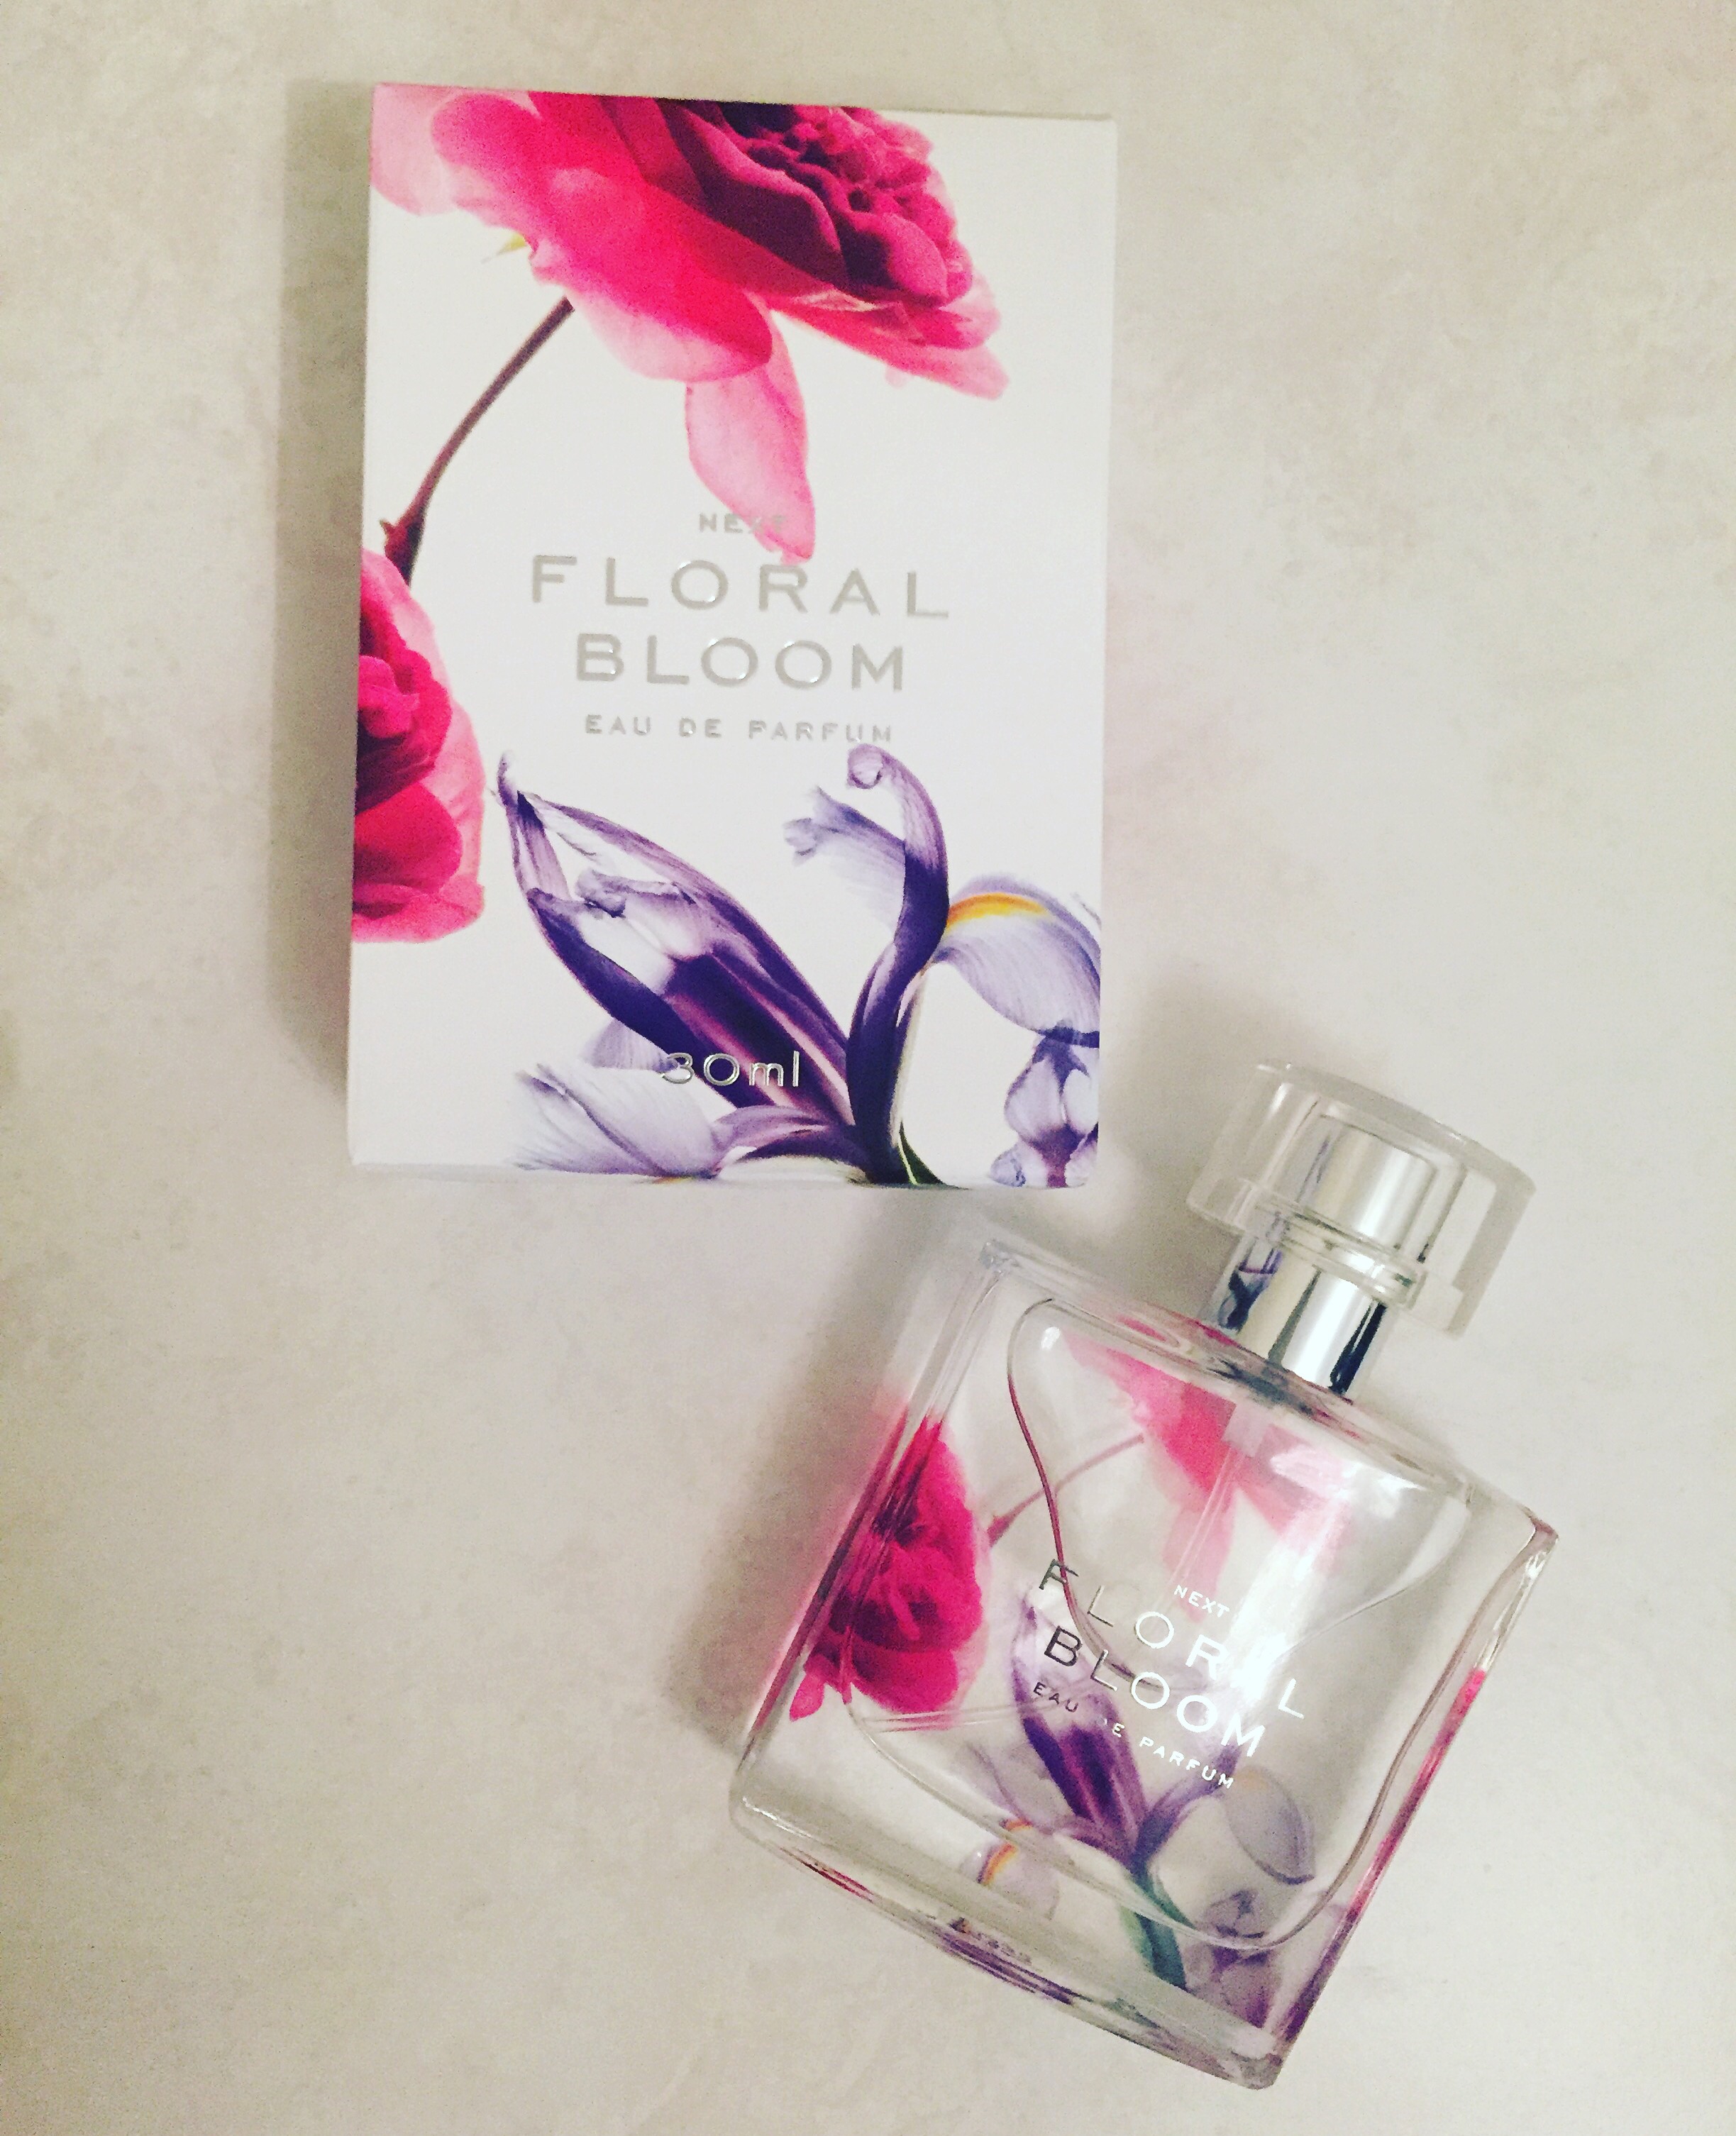 floral bloom perfume next